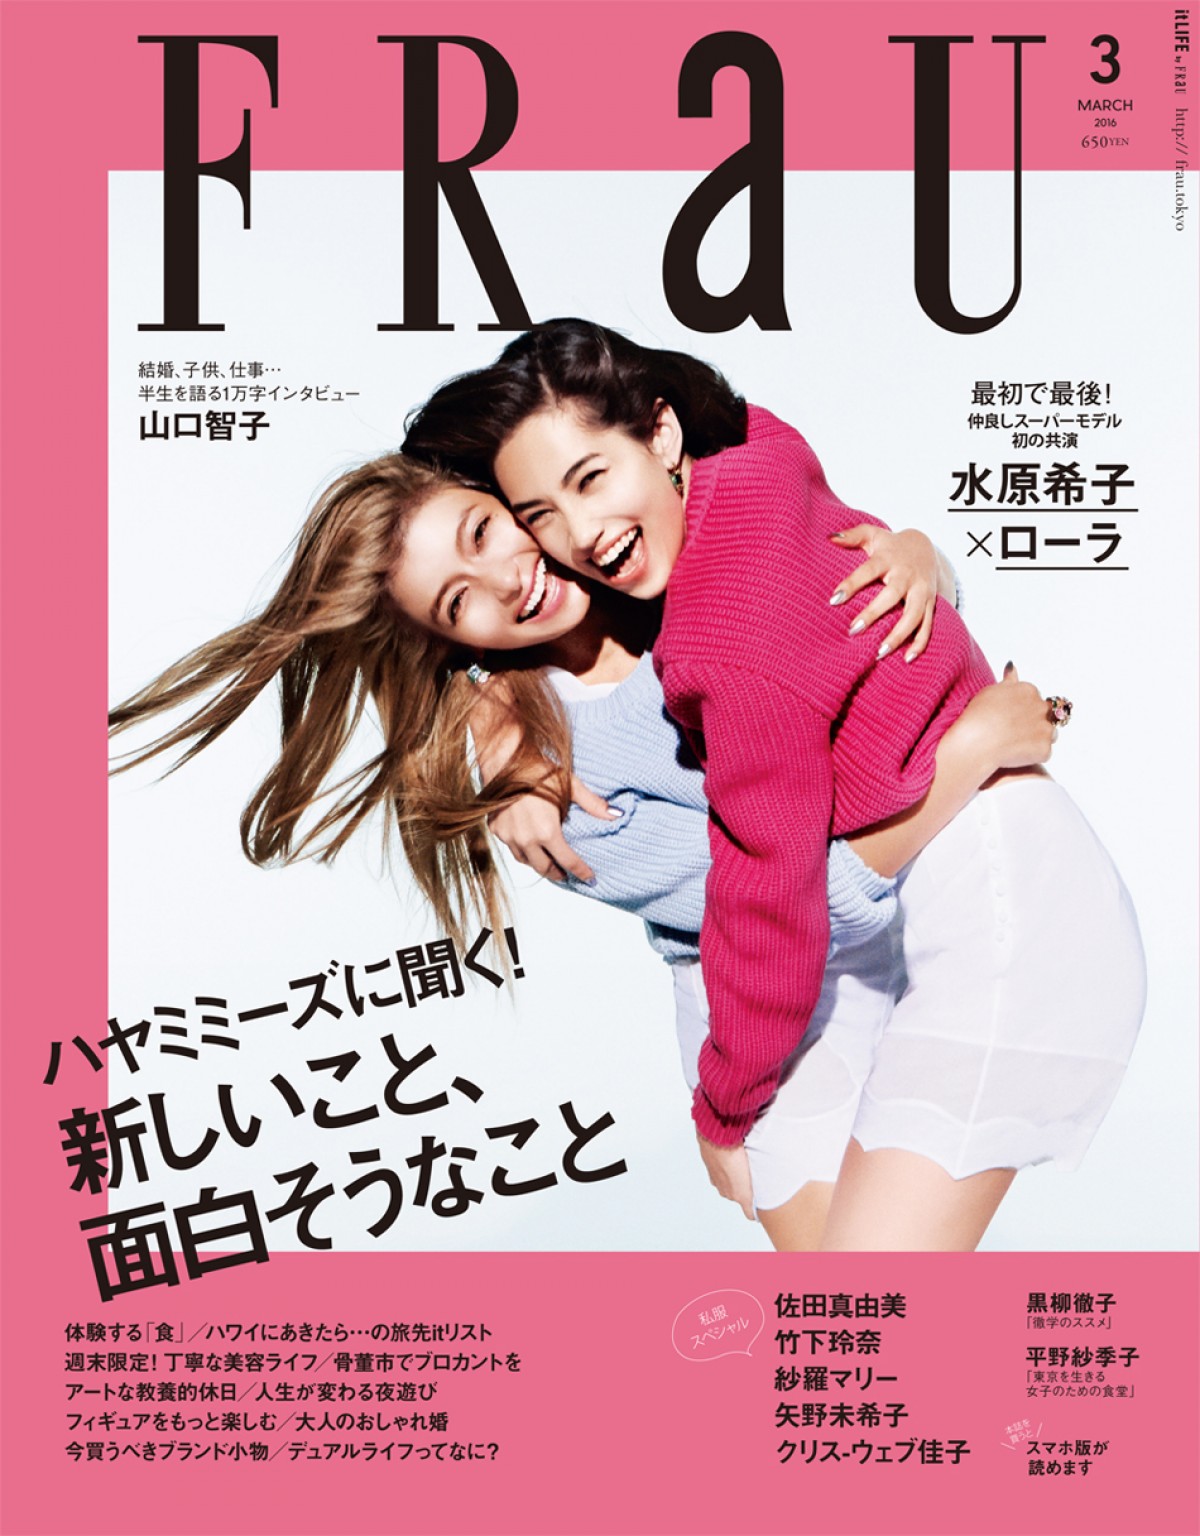 雑誌「FRaU」3月号表紙